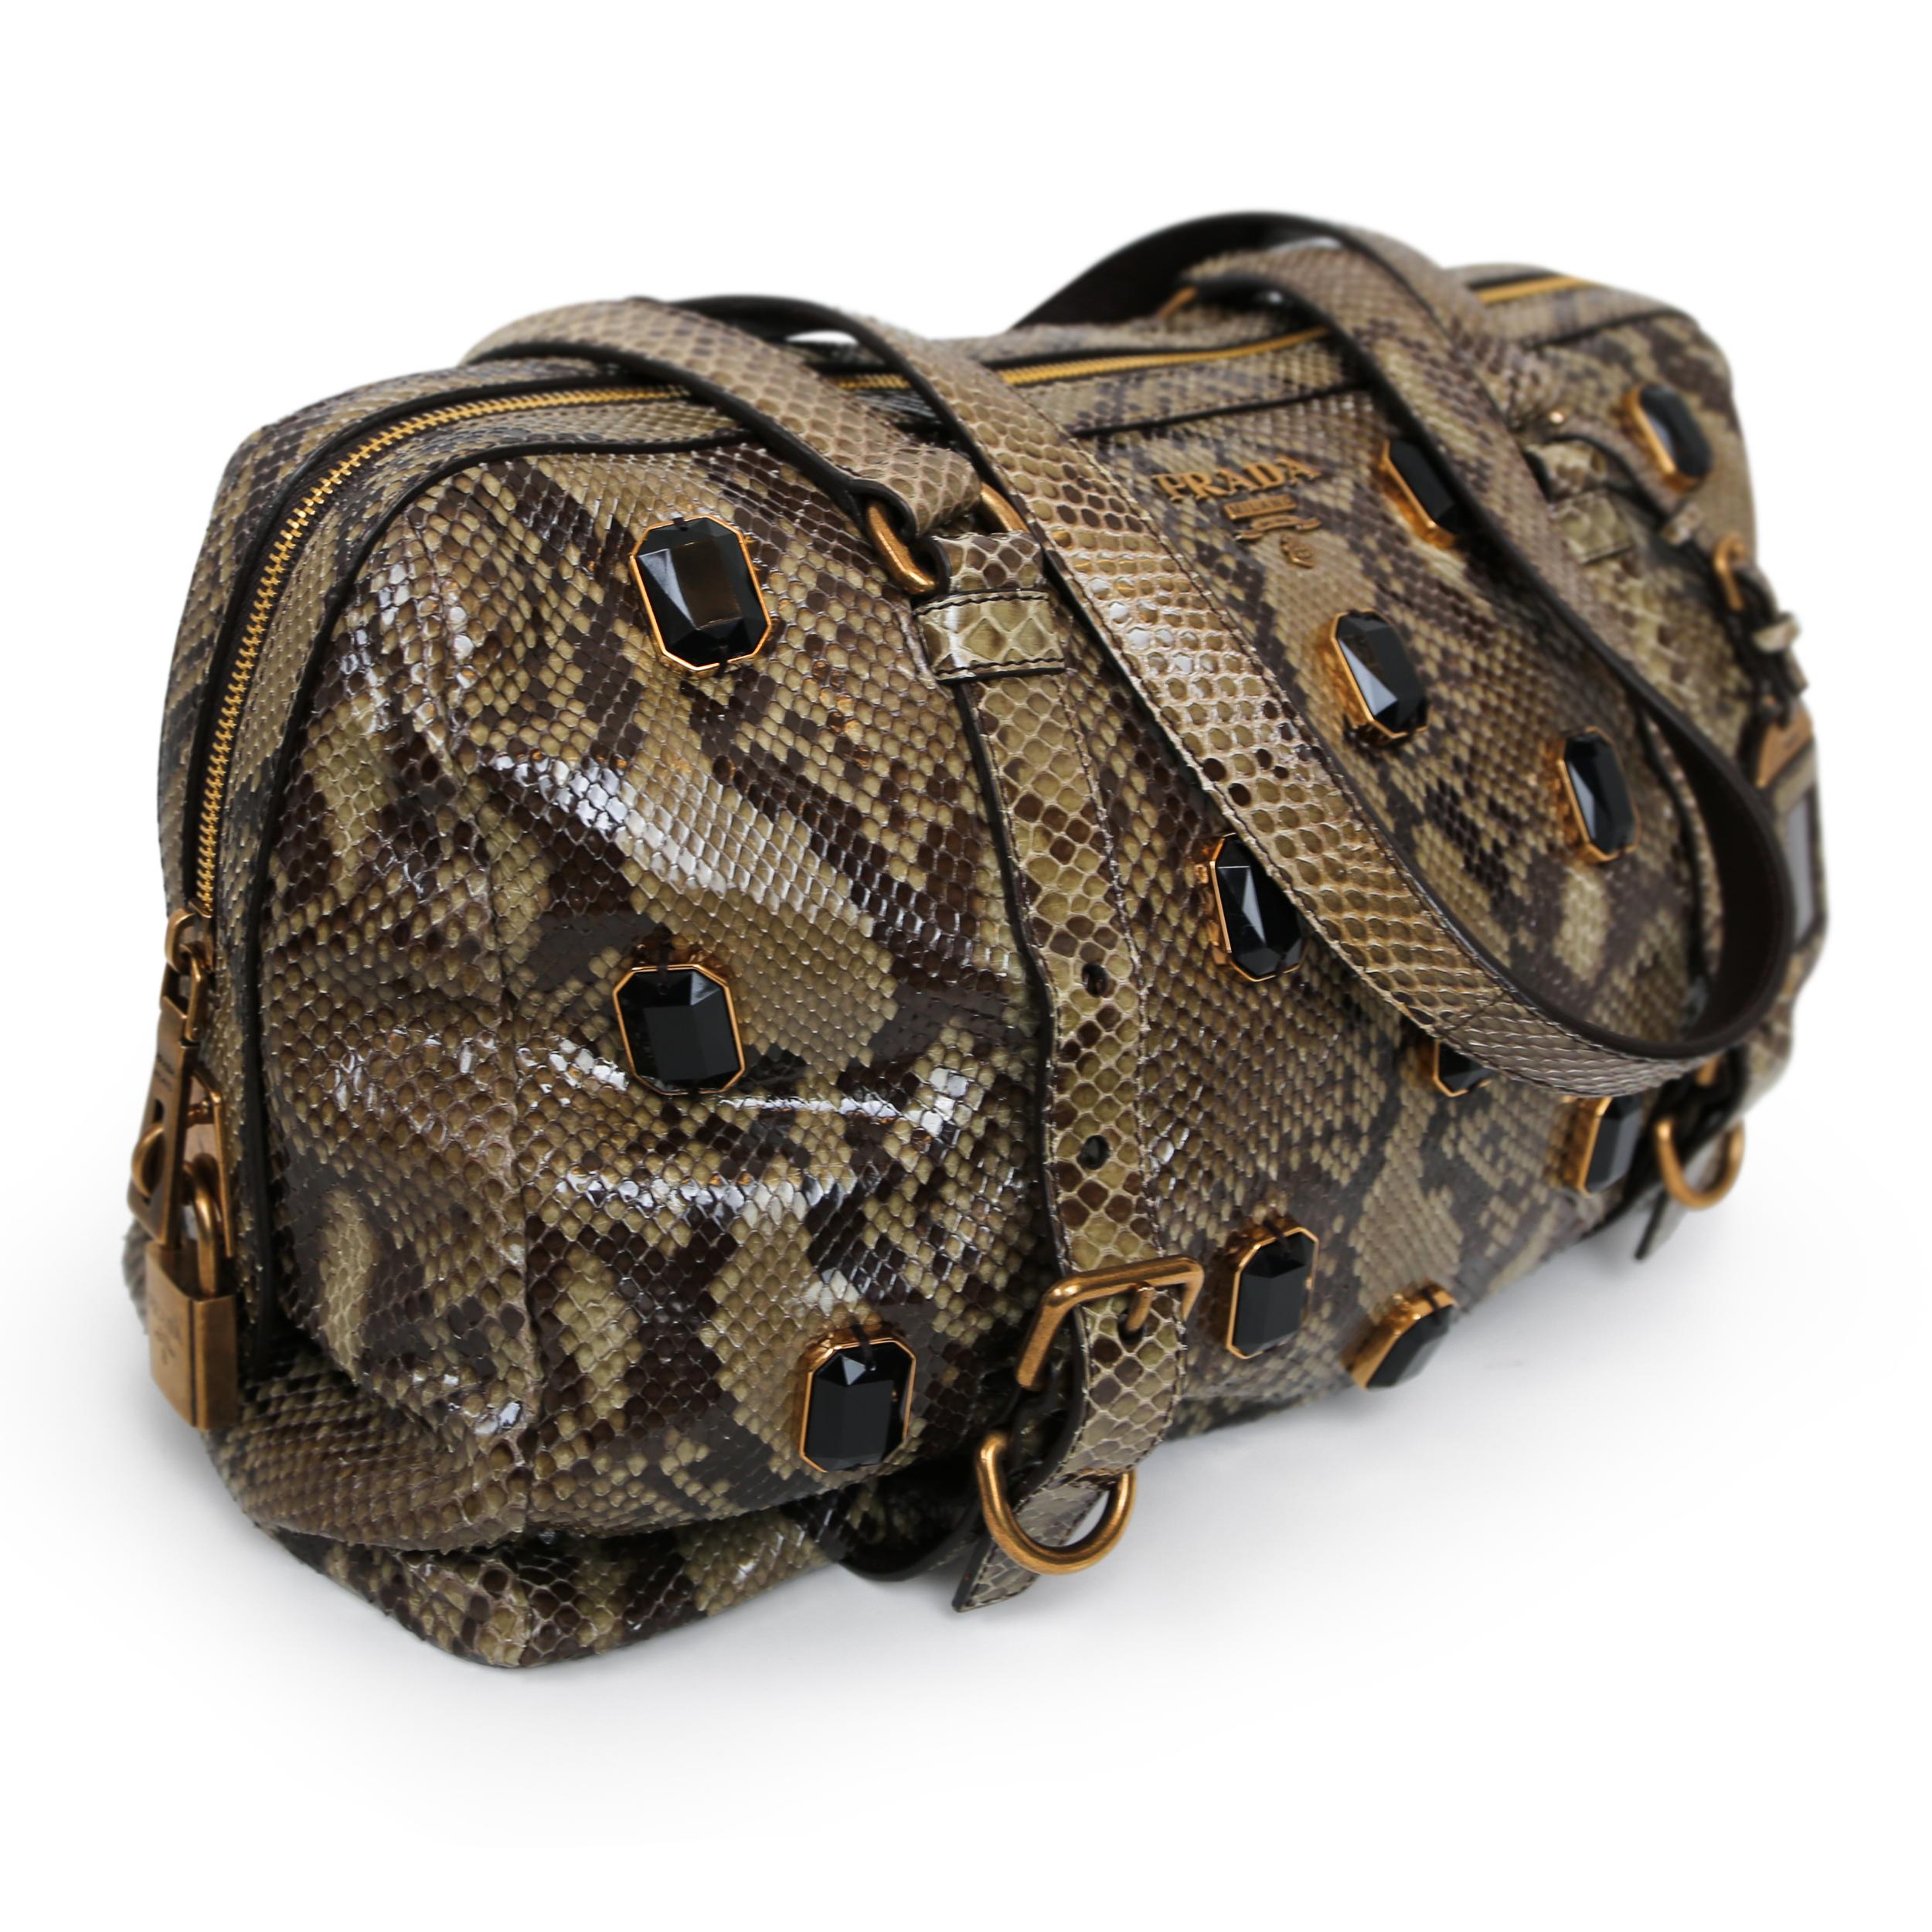 Ce sac exquis de Prada est doté d'un luxueux cuir de python et de ferrures dorées. Le cadenas orné de bijoux et les perles embellies ajoutent une touche de glamour à ce sac à main à bandoulière pratique et polyvalent. Doublé de cuir et doté d'une